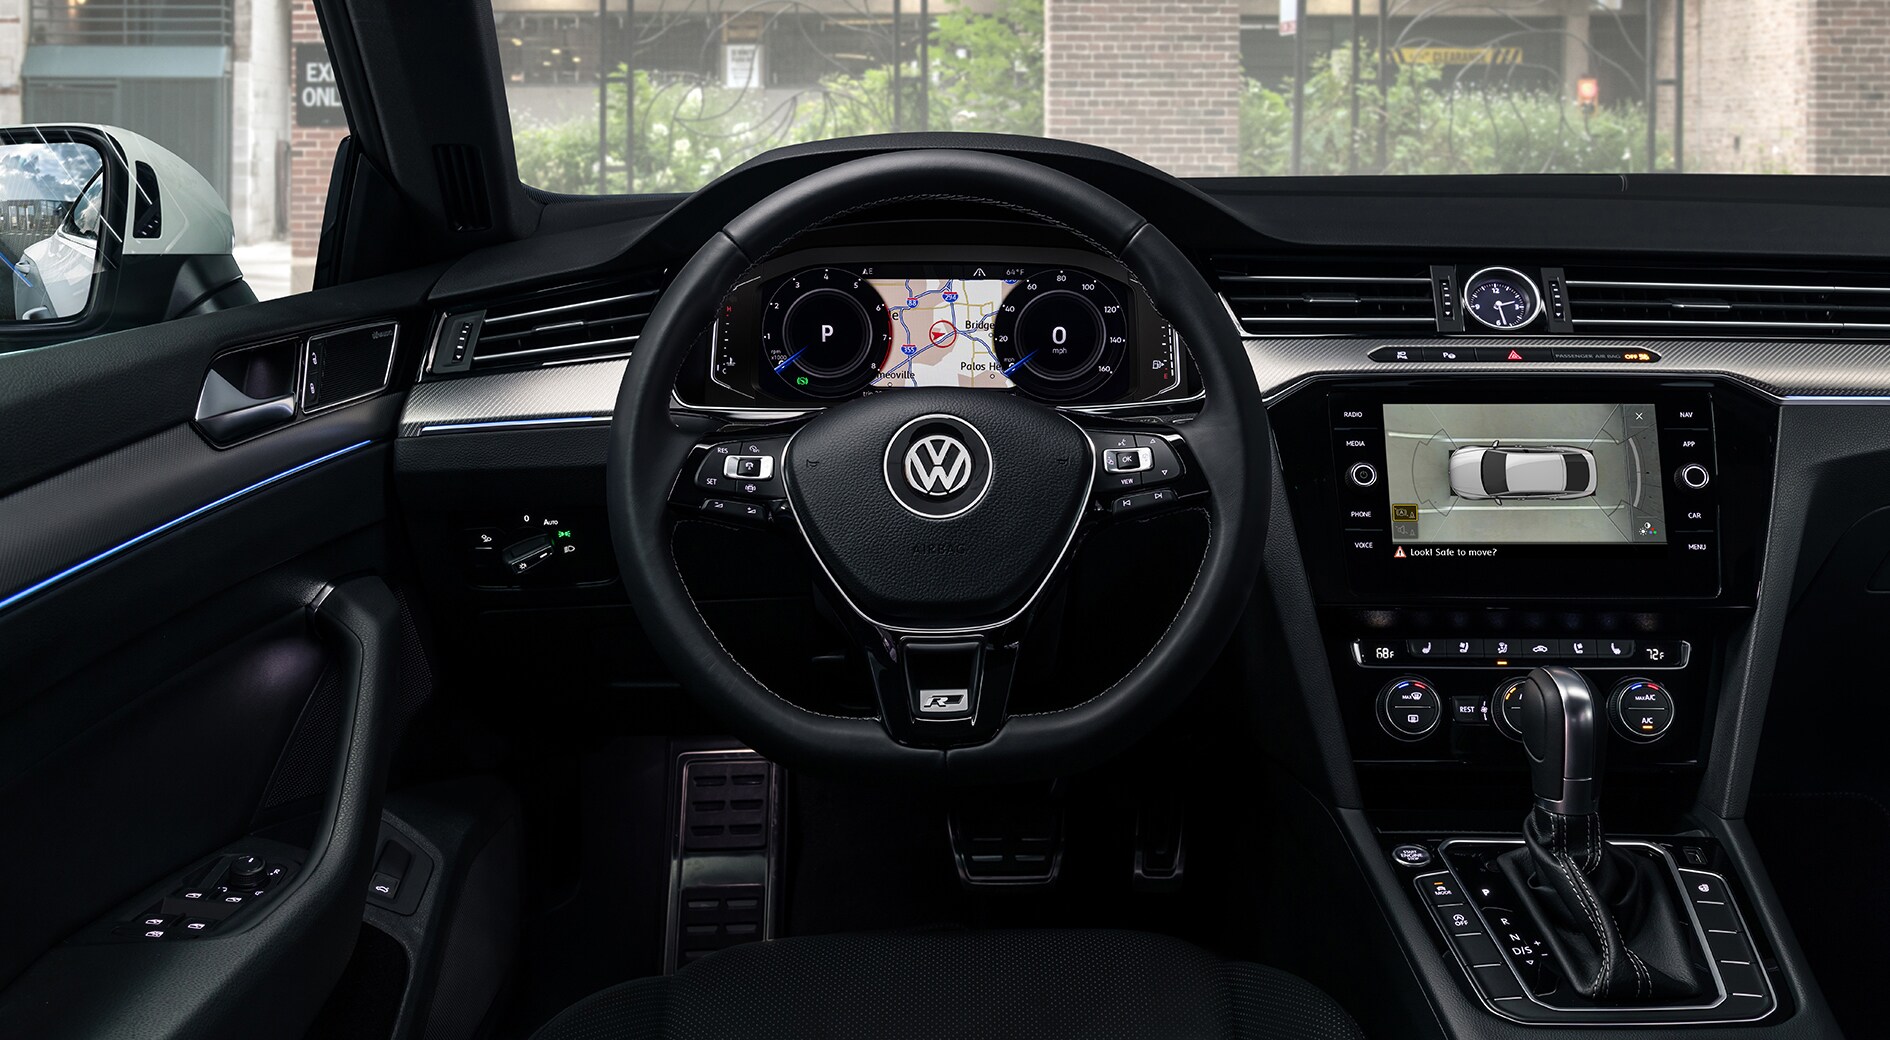 2020 Volkswagen Arteon touchscreen